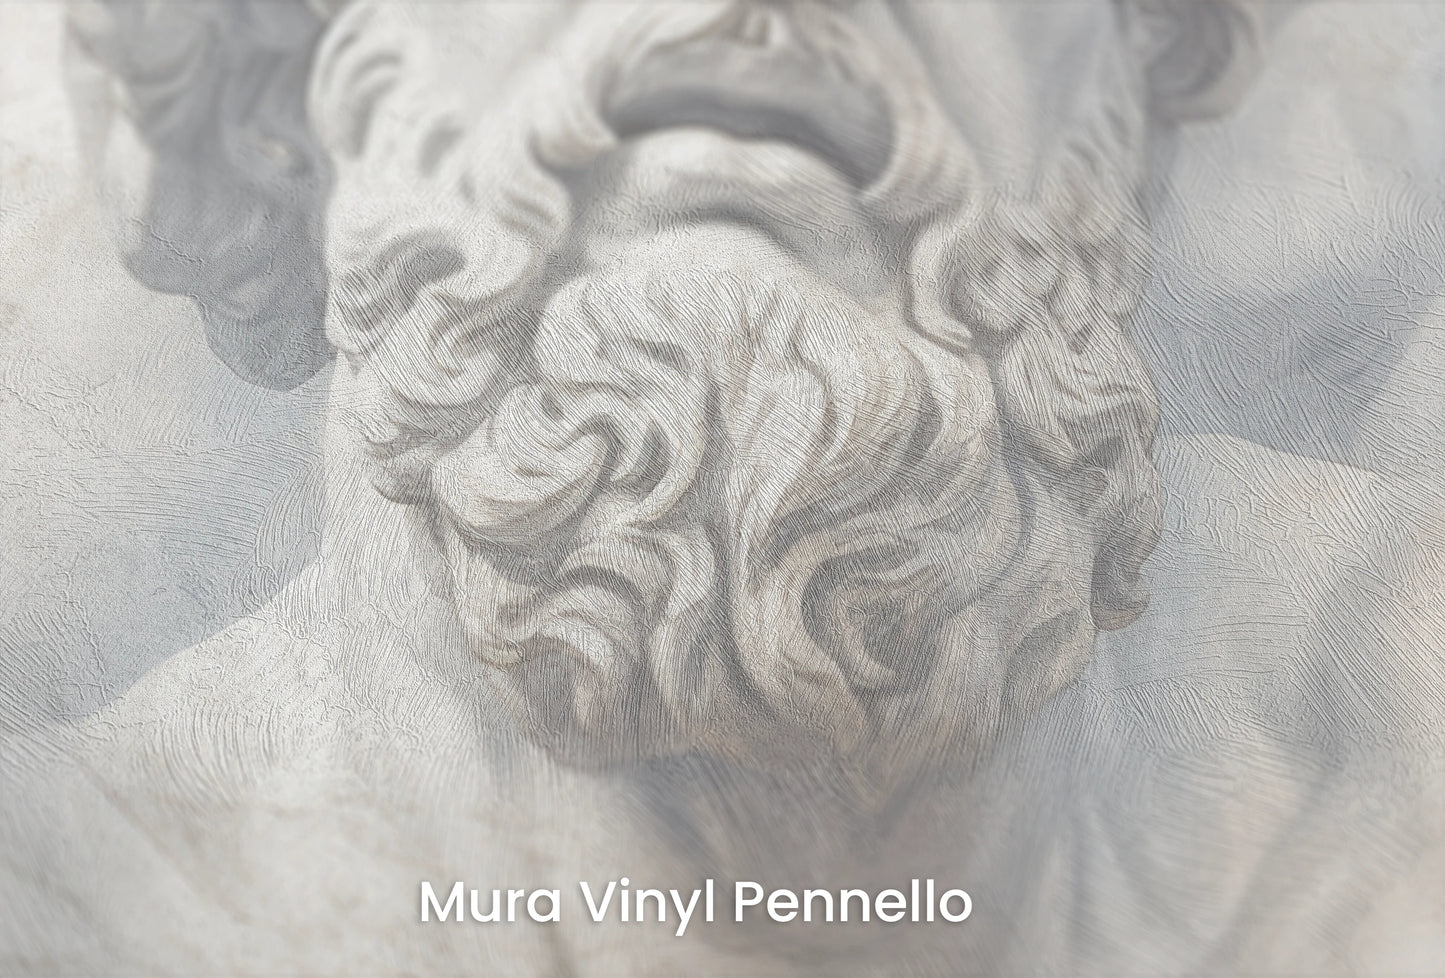 Zbliżenie na artystyczną fototapetę o nazwie Zeus's Thunder na podłożu Mura Vinyl Pennello - faktura pociągnięć pędzla malarskiego.